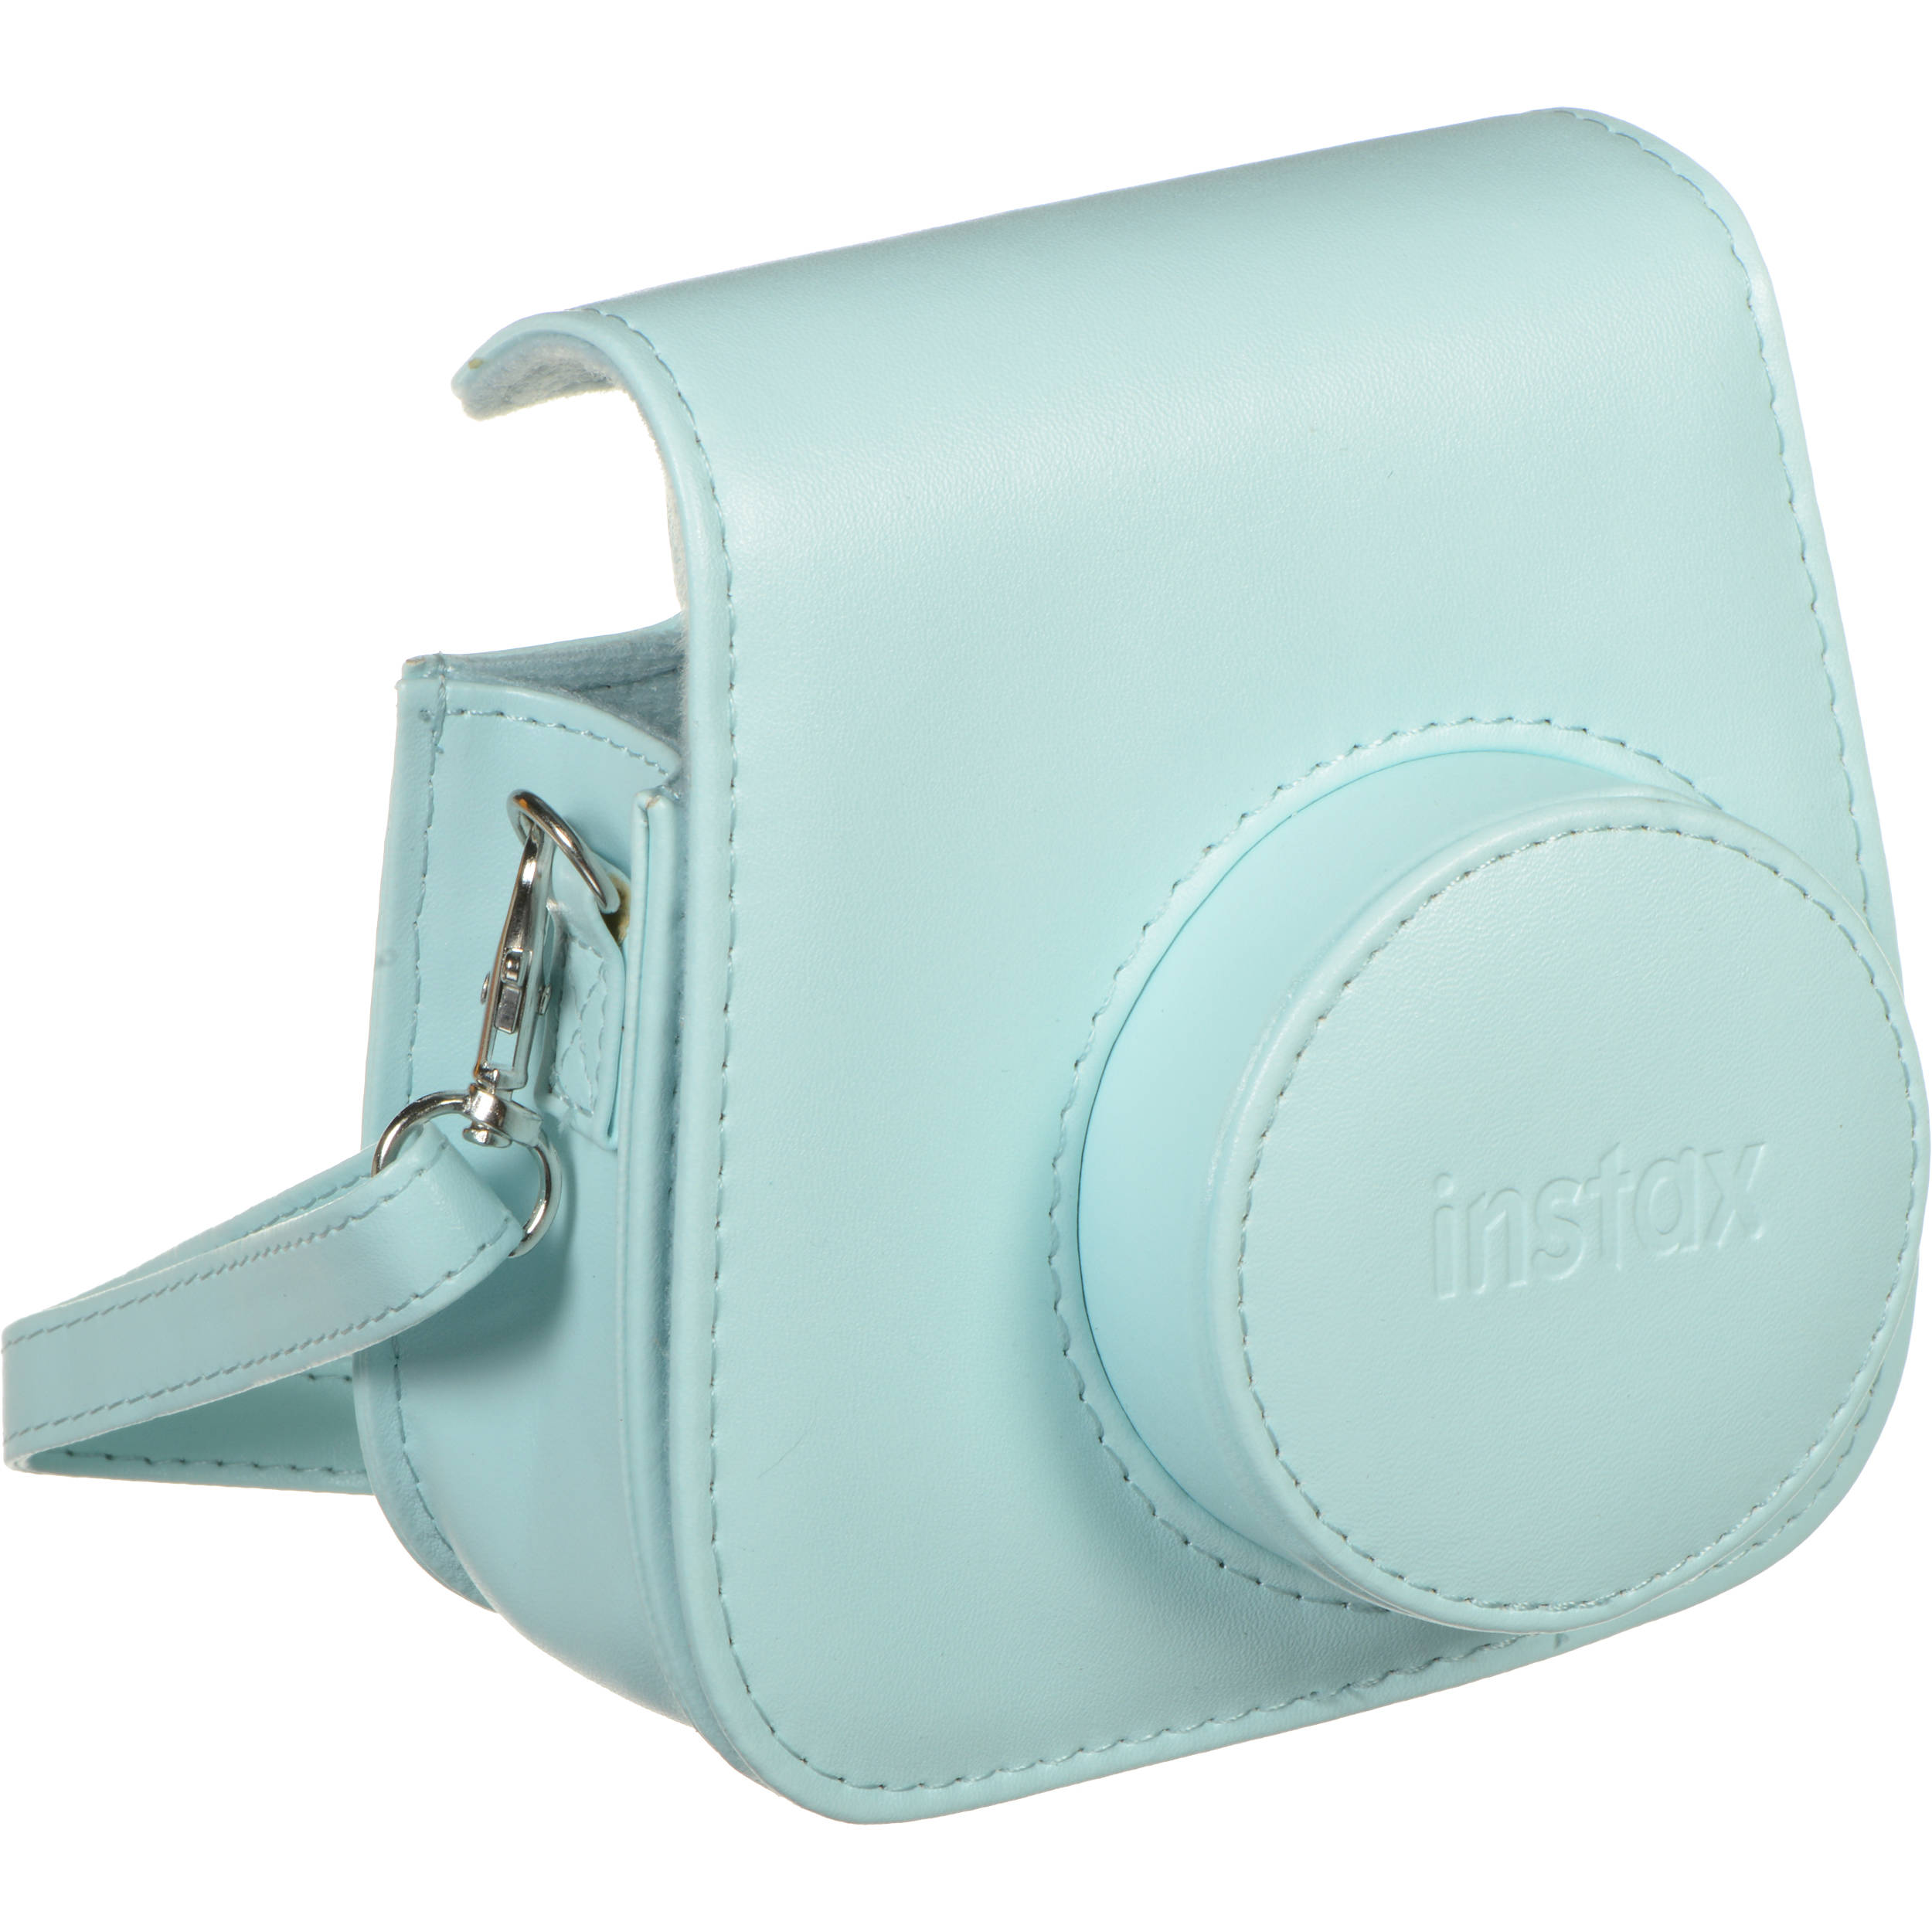 instax mini camera bag